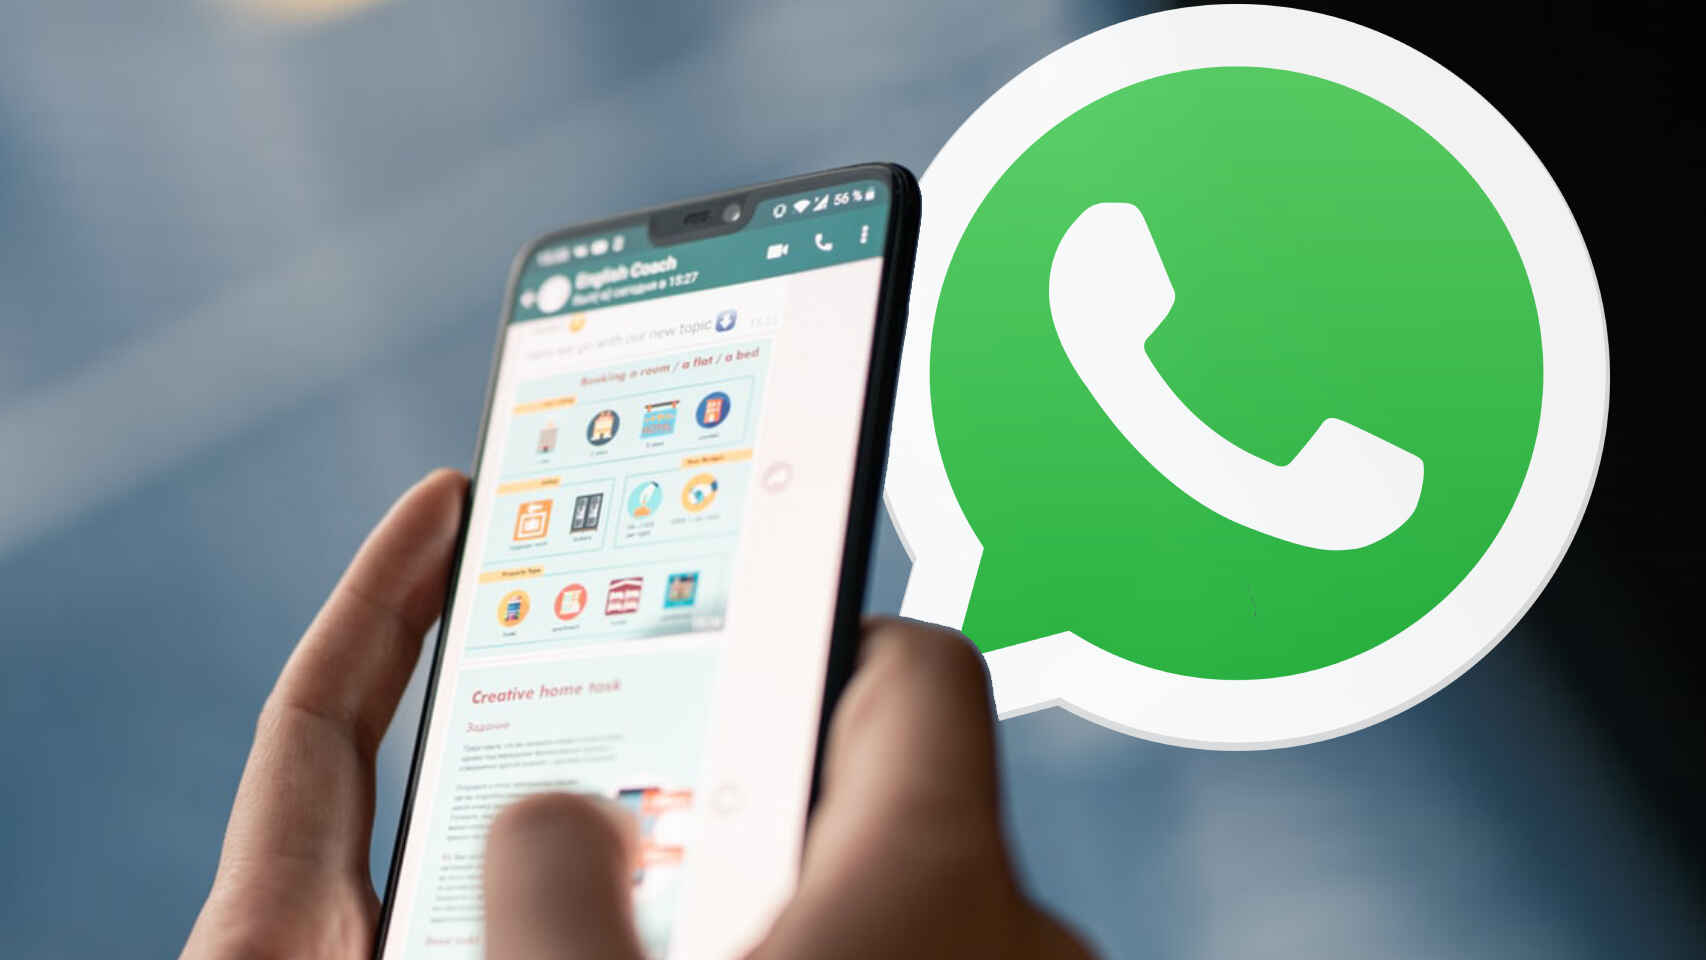 WhatsApp promete una “mejor calidad” en el envío de fotos y videos